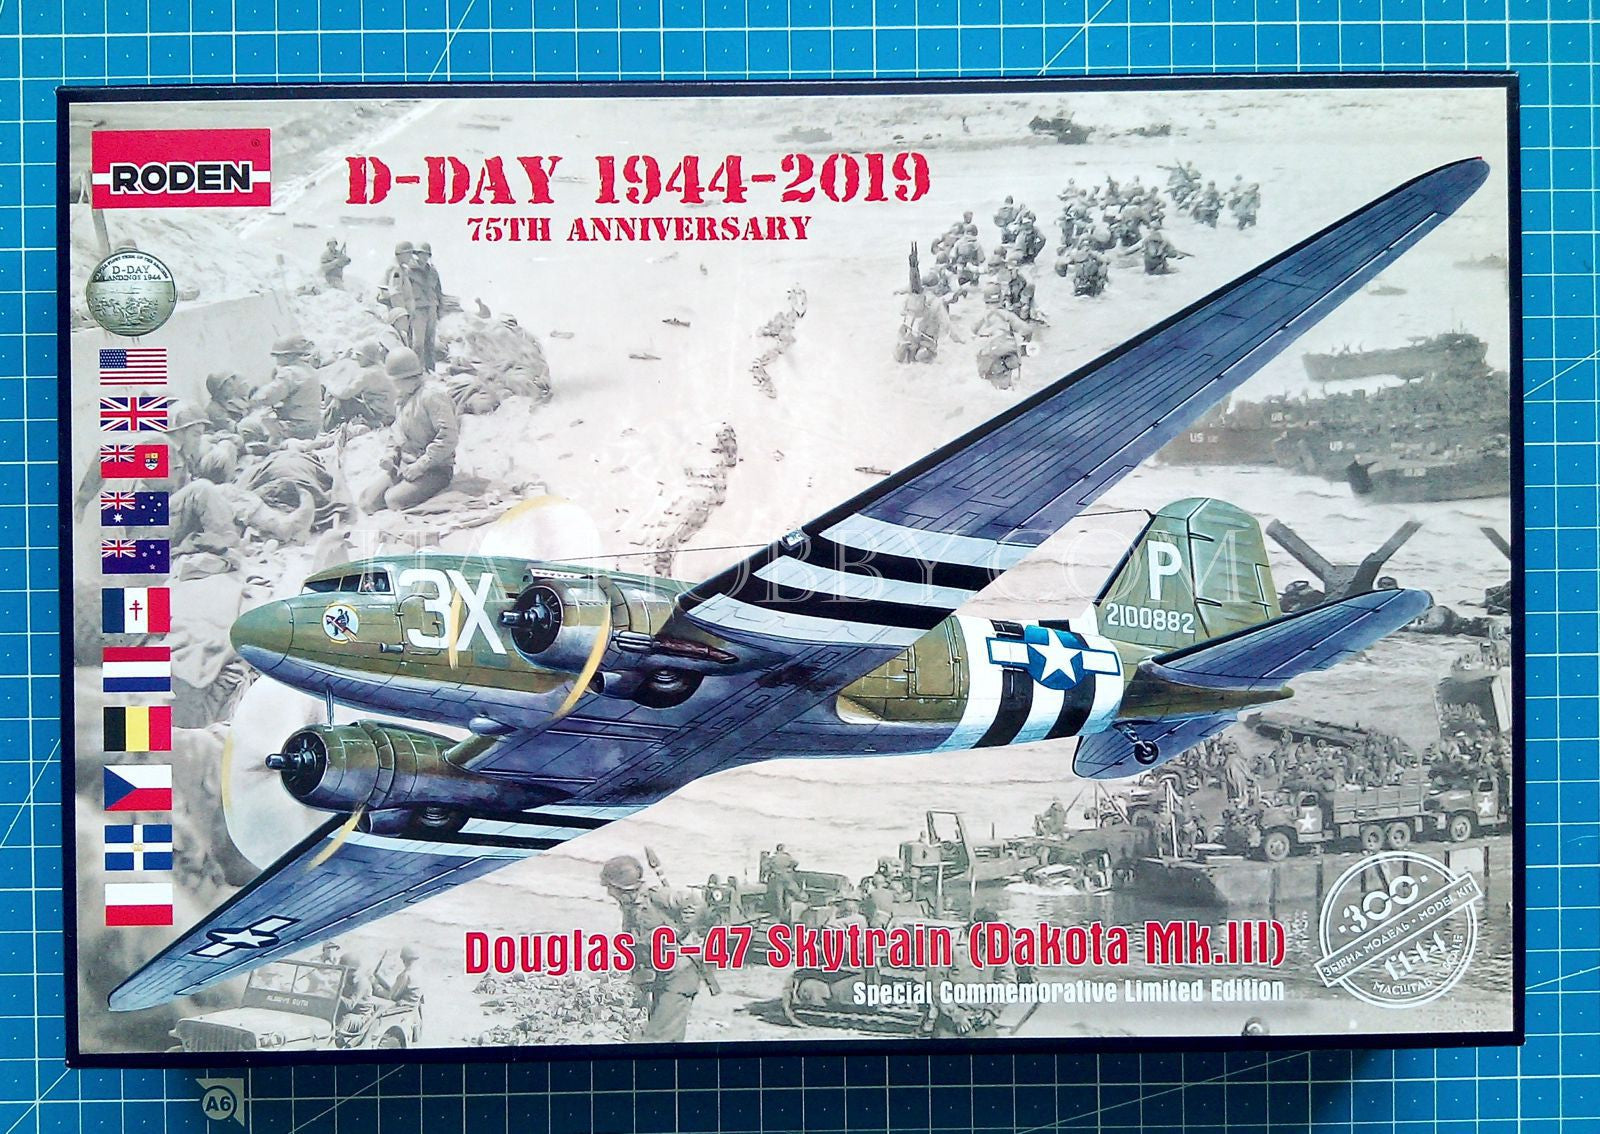 1/144 Douglas C-47 Skytrain (Dakota Mk.III) D-Day 1944-2019. Roden 300